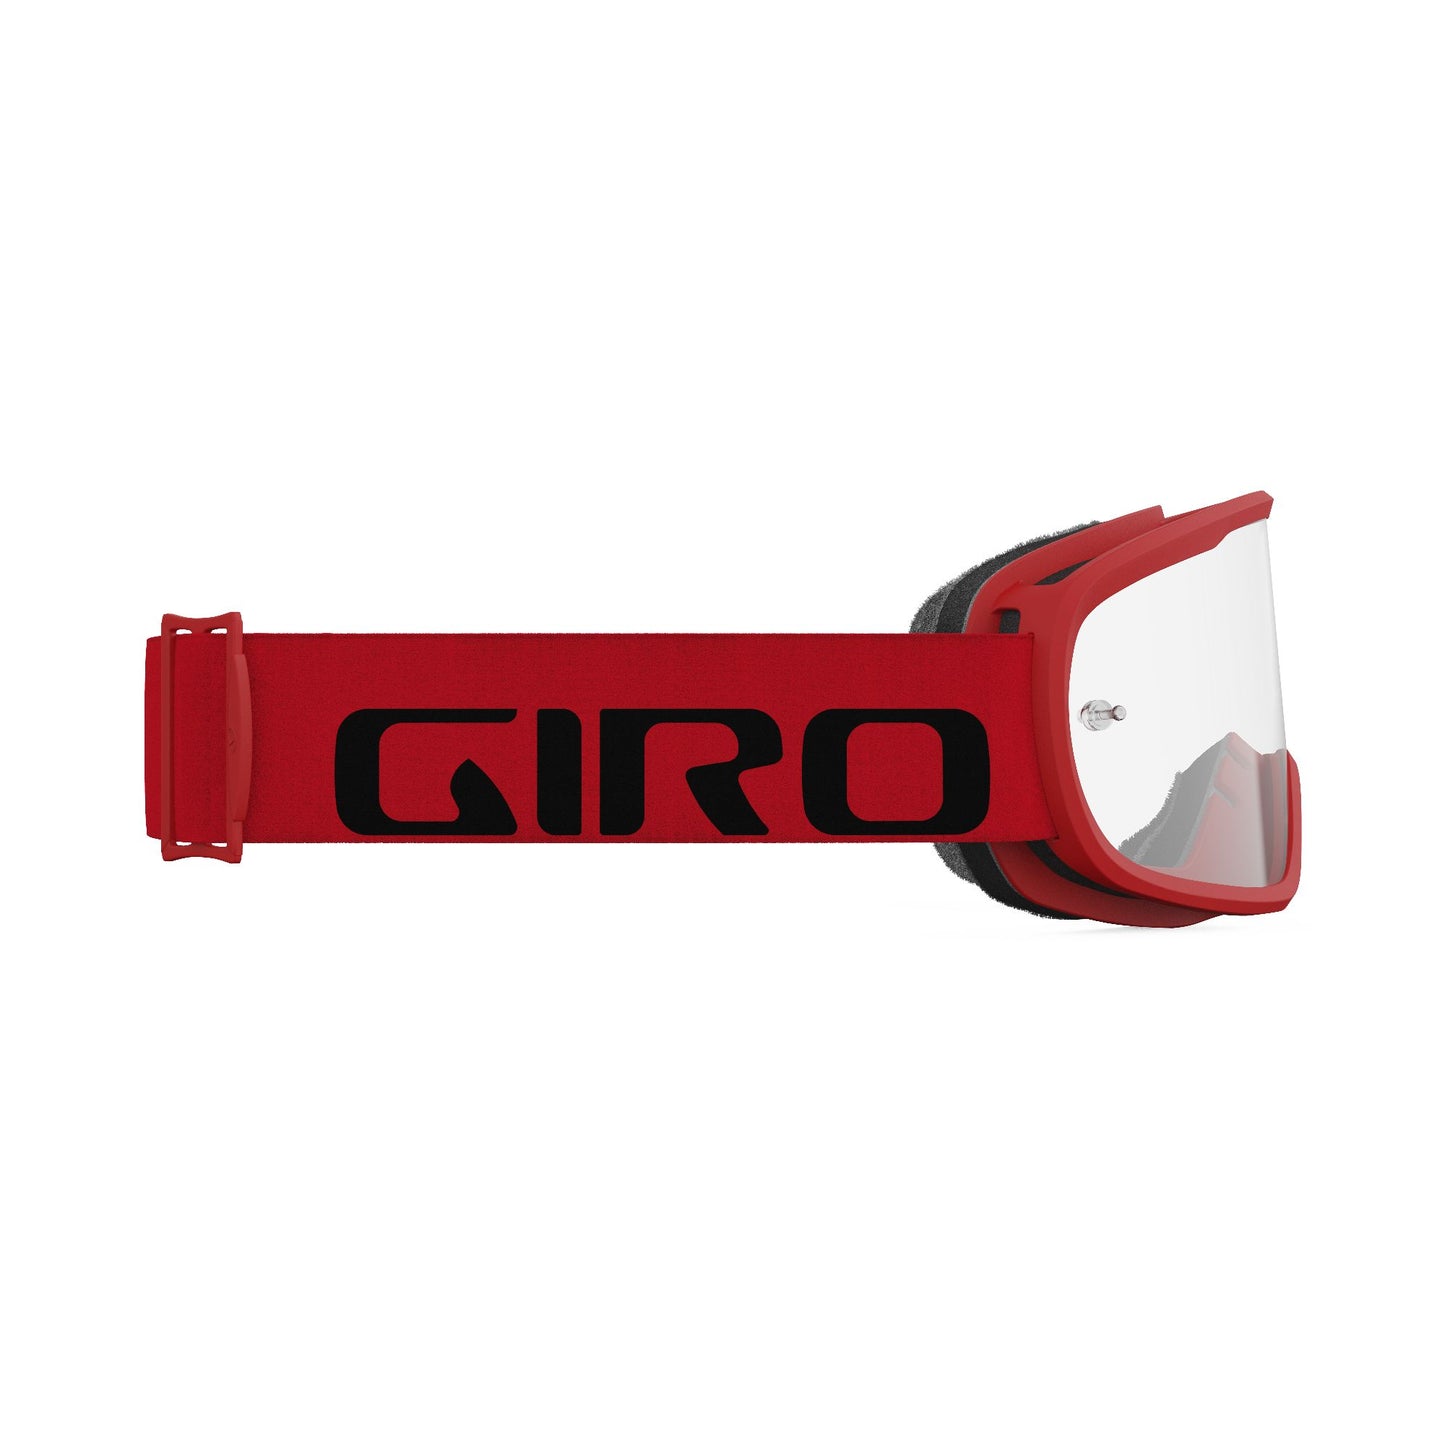 Giro Tempo MTB Goggle Red / Clear Bike Goggles